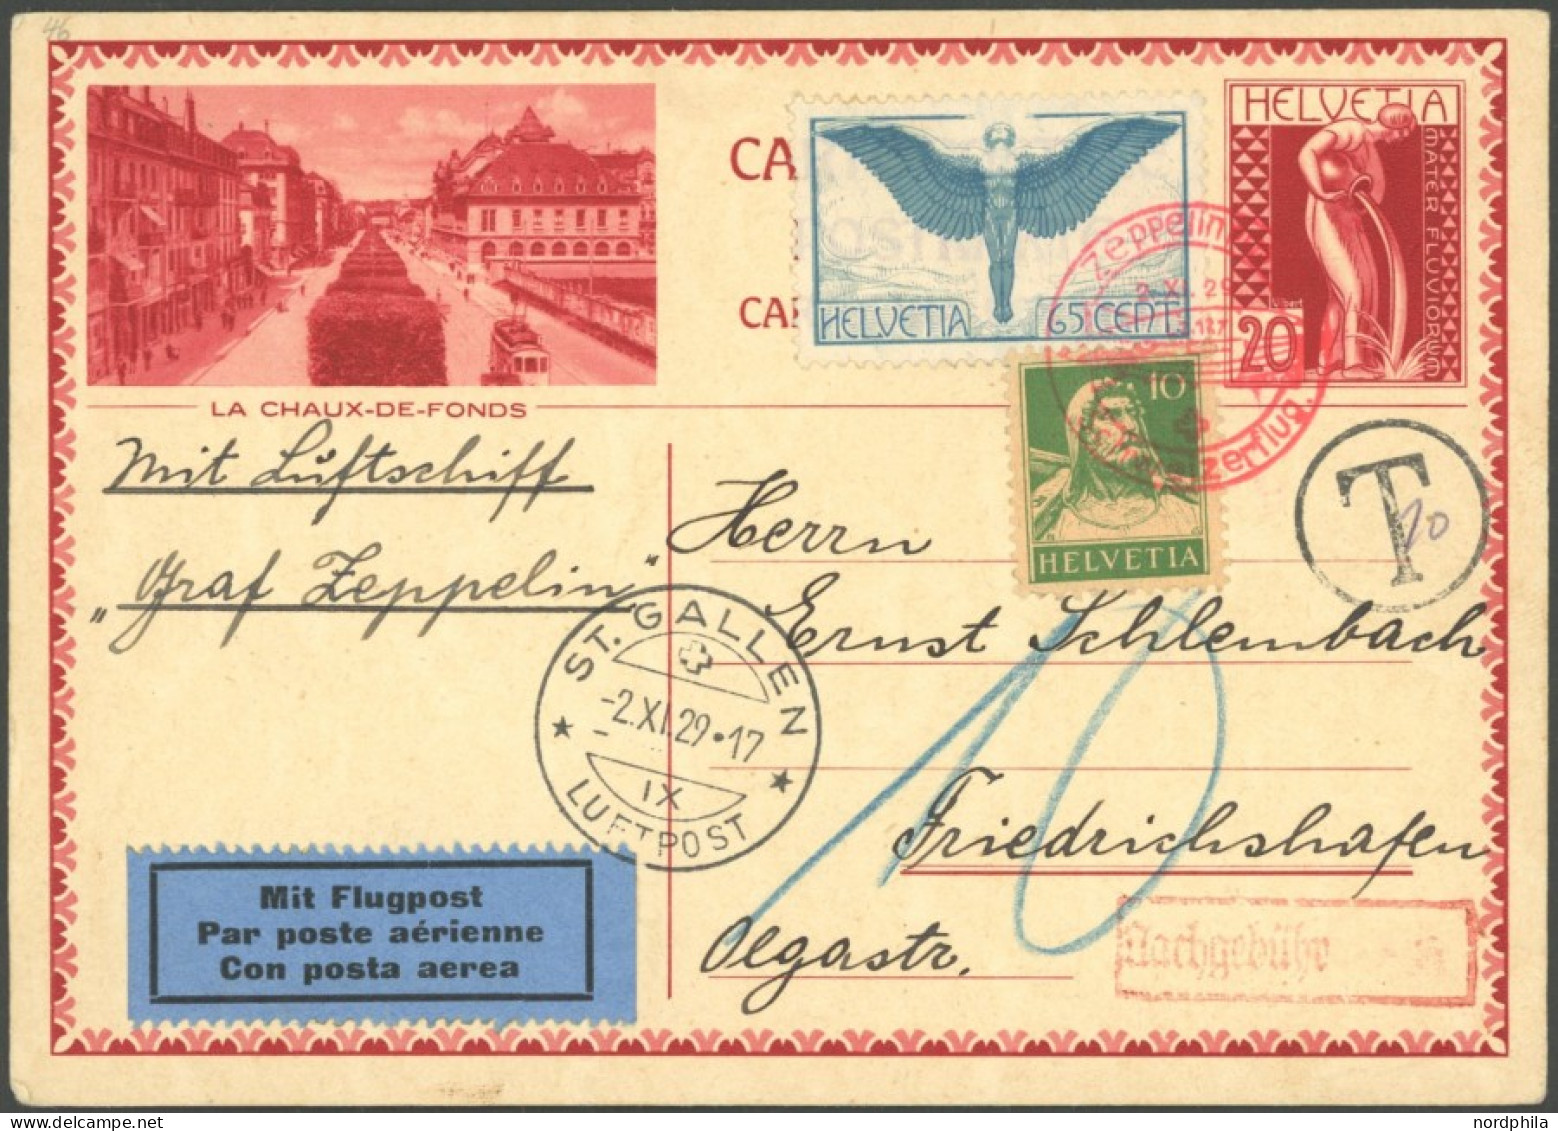 ZEPPELINPOST 46 BRIEF, 1929, Fahrt Nach Zürich-Dübendorf, Schweizer Post, Mit Nachgebühr, Prachtkarte - Poste Aérienne & Zeppelin